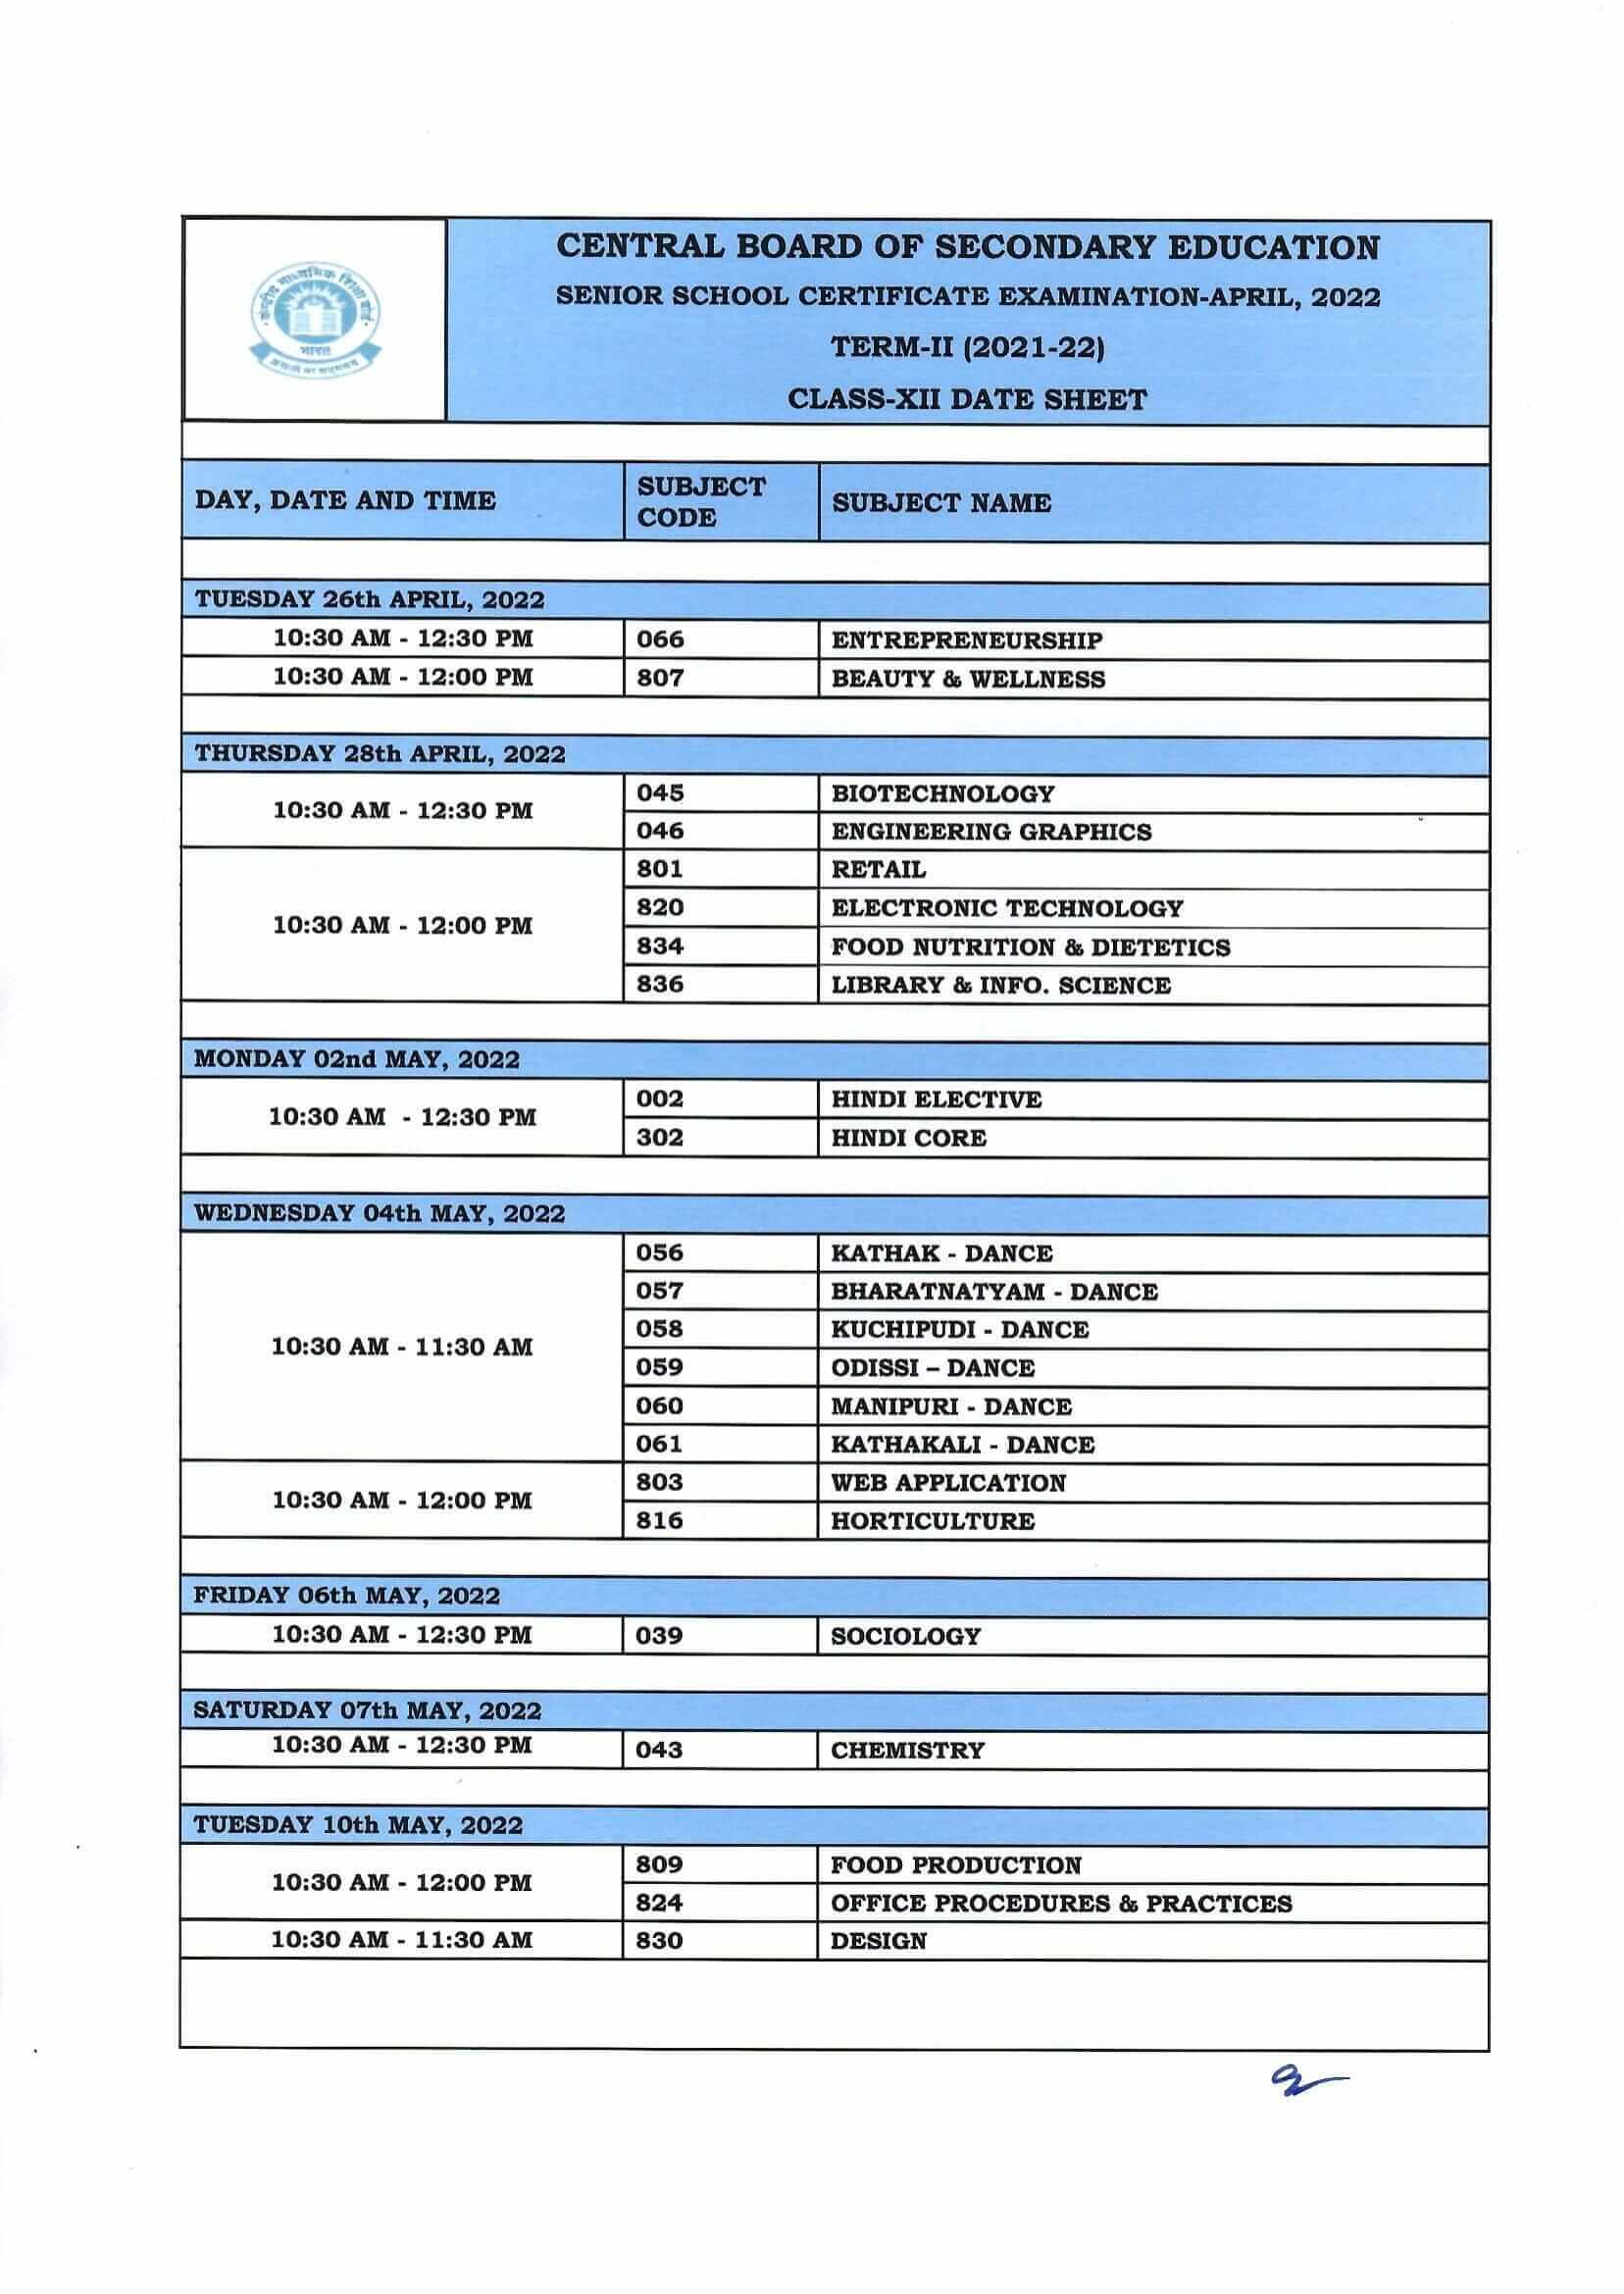 CBSE Date Sheet for Class 12 Second Term Exams 2022